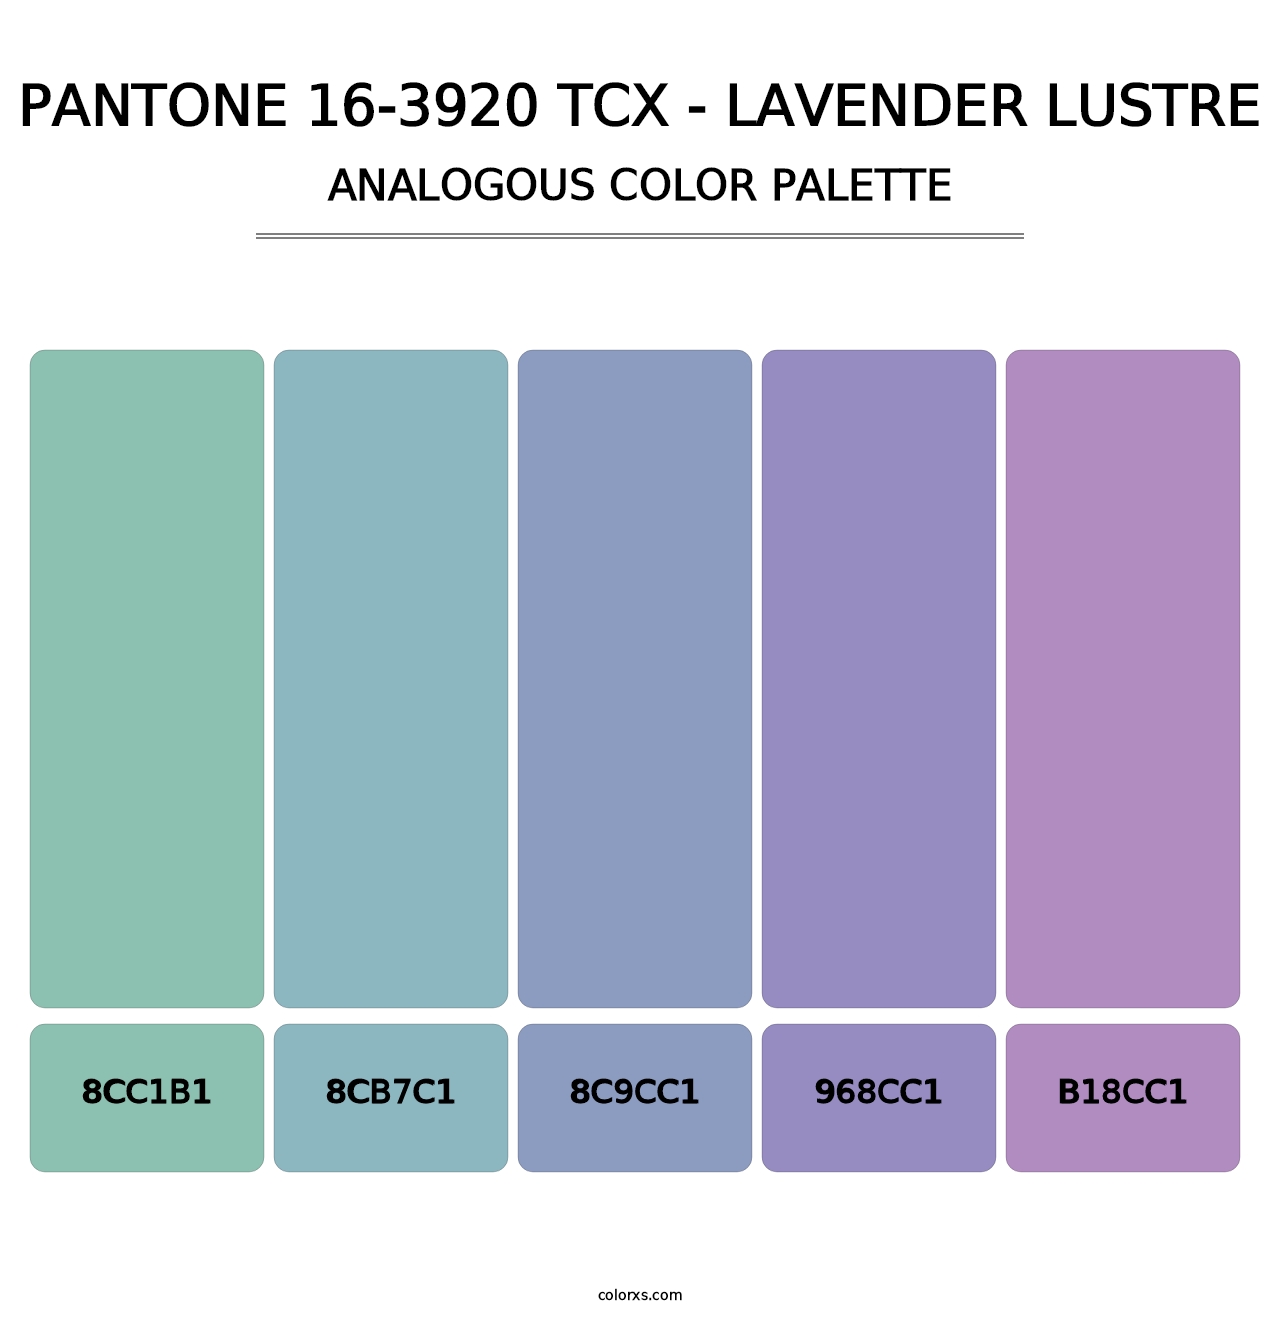 PANTONE 16-3920 TCX - Lavender Lustre - Analogous Color Palette